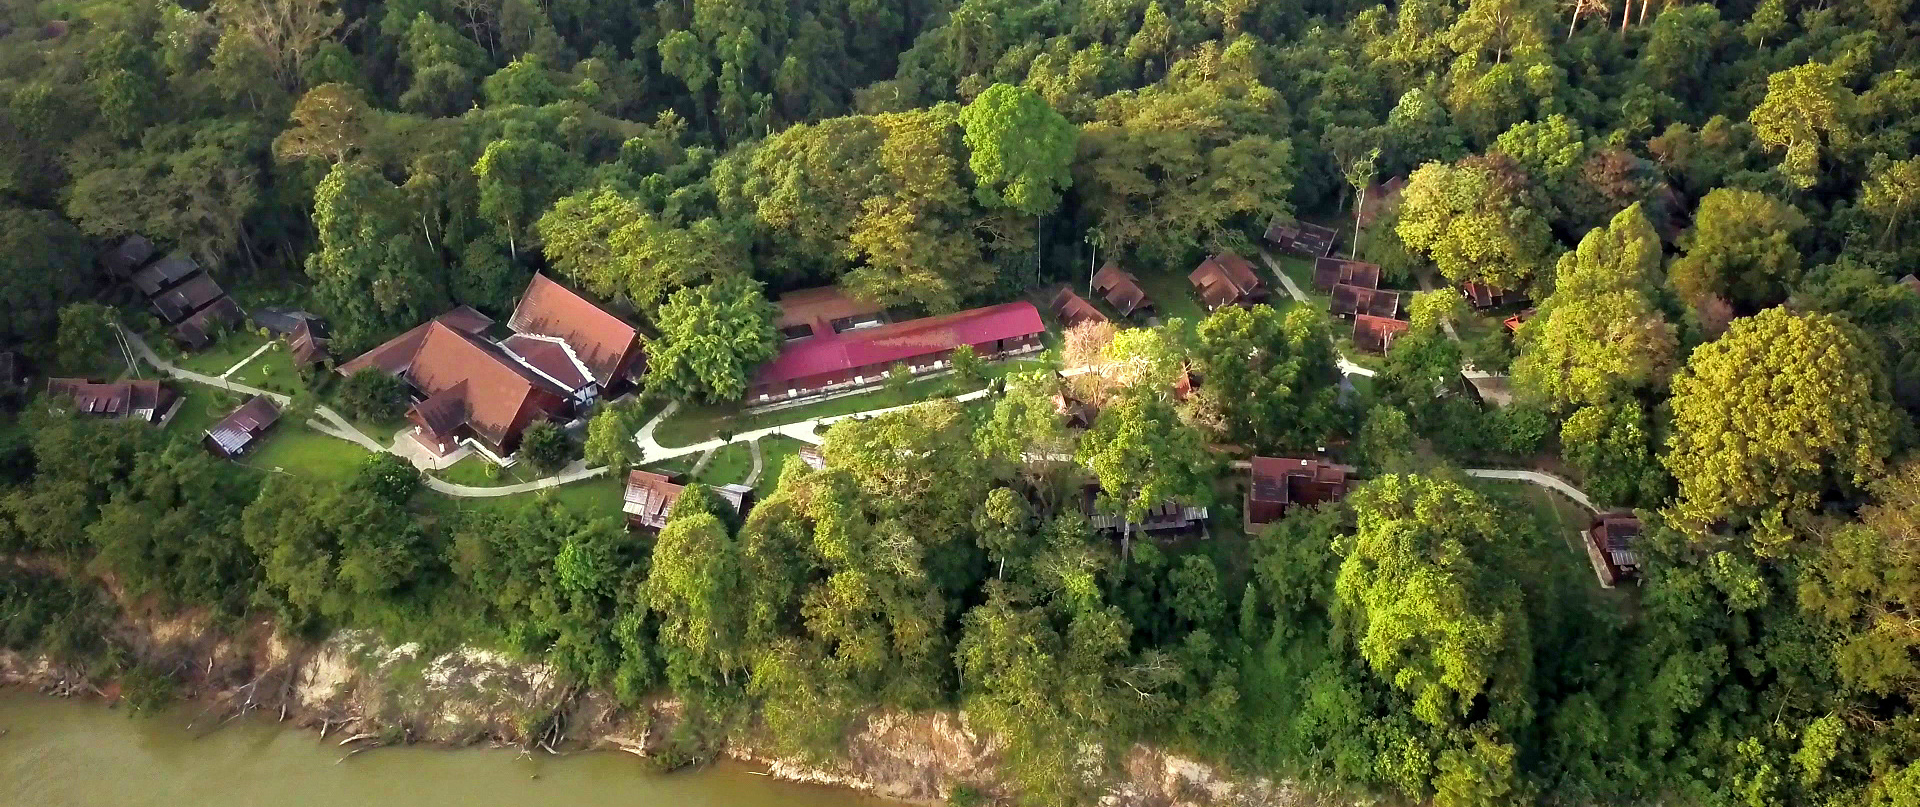 Eine Der ältesten Dschungel Der Welt - Taman Negara - Asien-Reise Blog